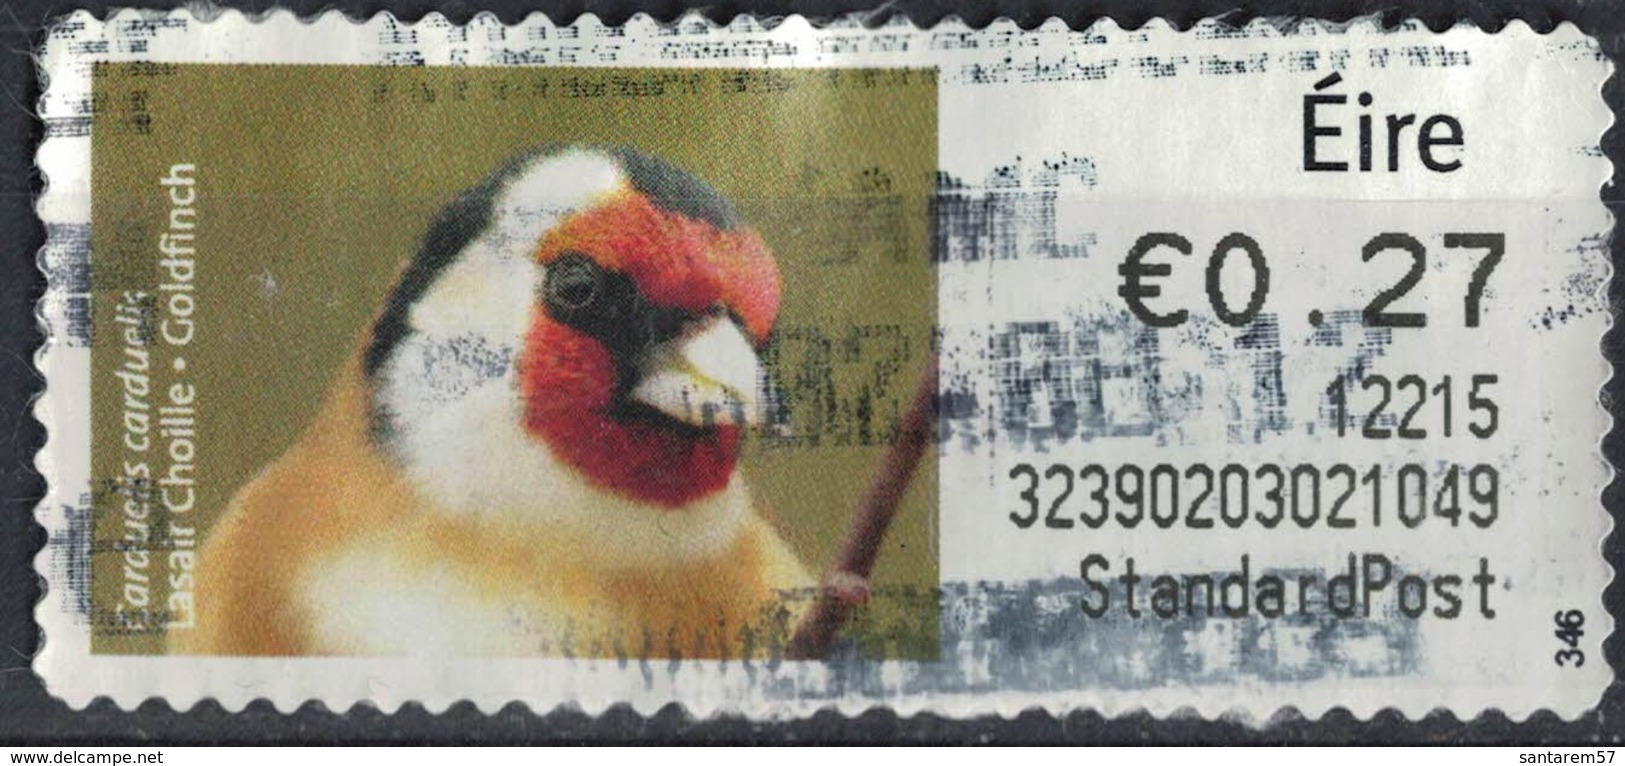 Irlande Vignette Oblitérée Bird Oiseau Chardonneret élégant Carduelis Carduelis SU - Vignettes D'affranchissement (Frama)